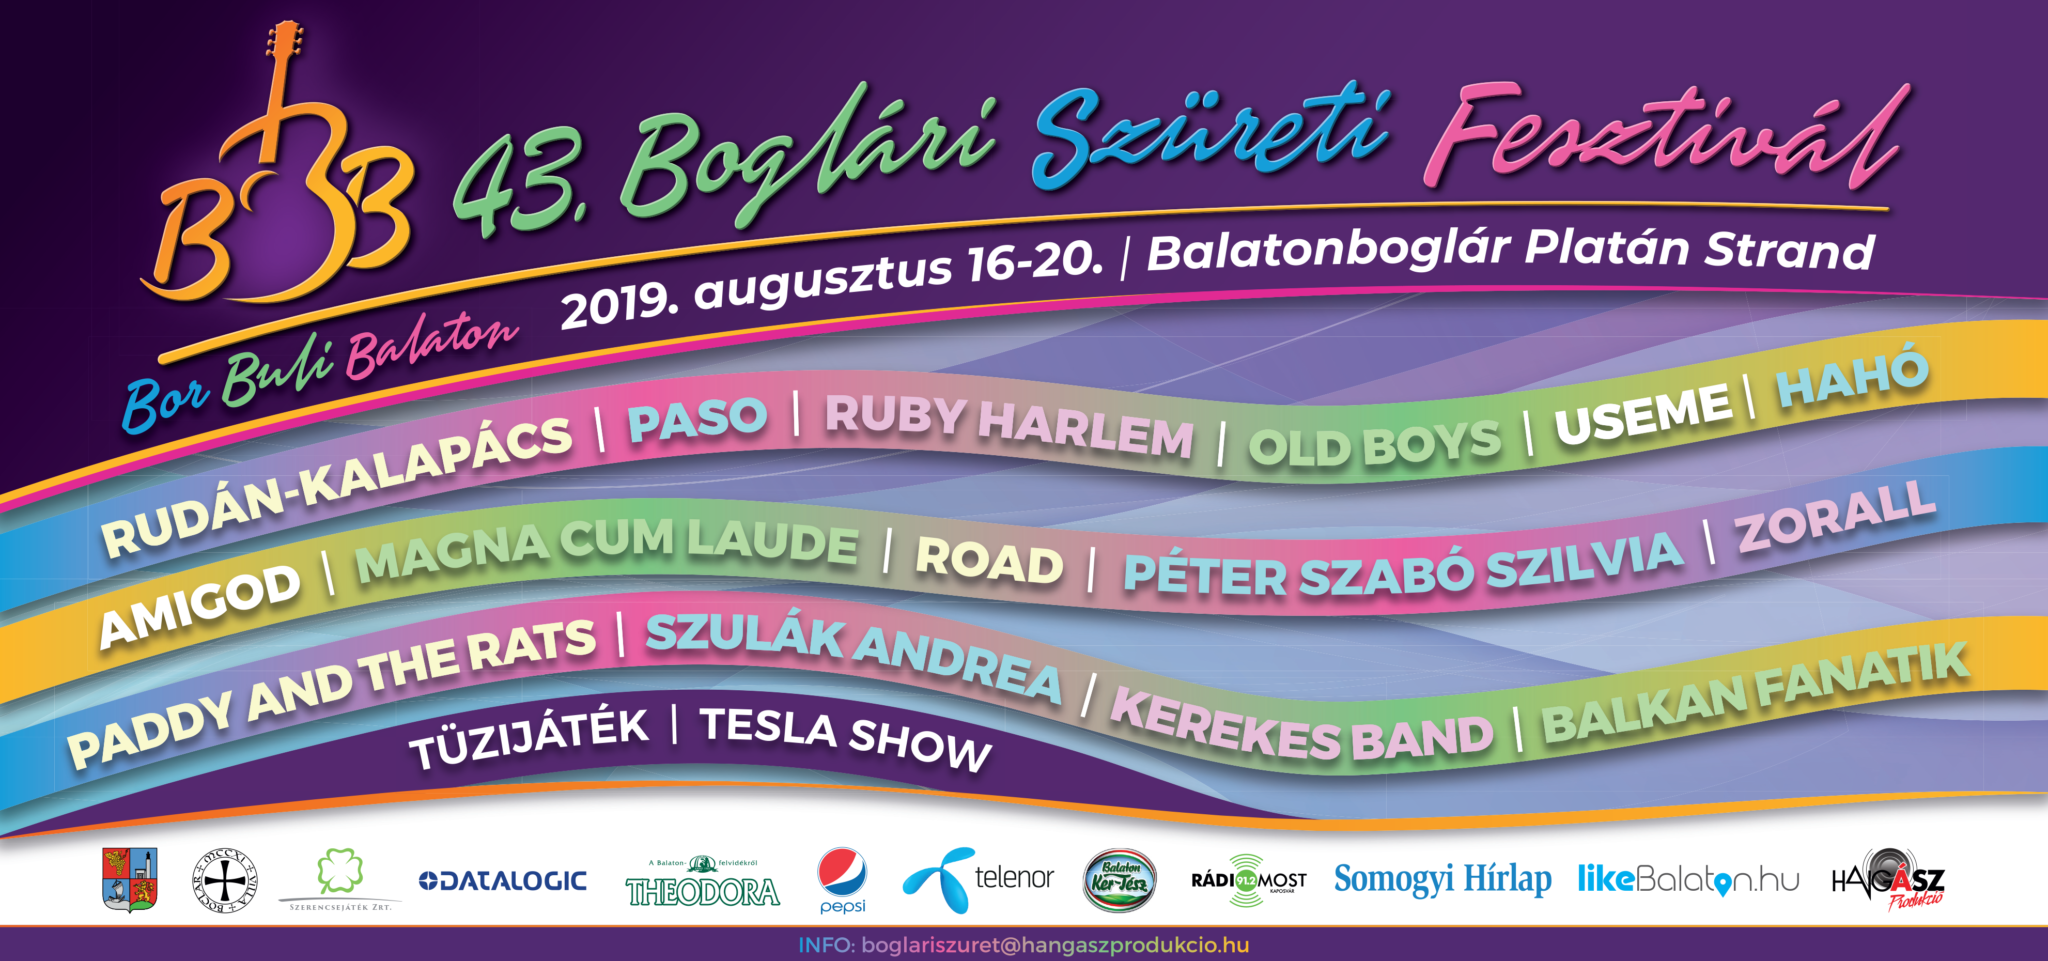 Megújul a Boglári Szüreti Fesztivál, még soha nem látott szenzációval vár idén a BBB!